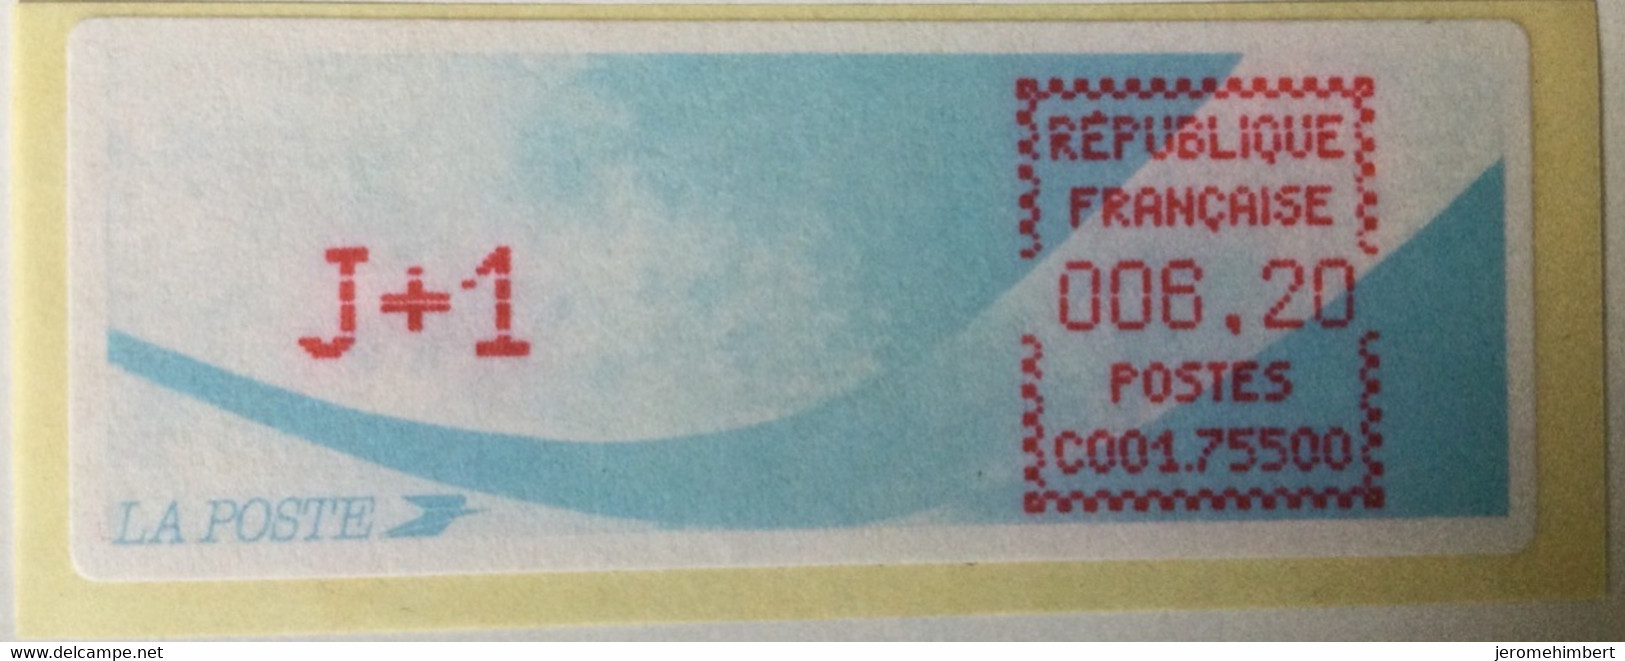 ATM LISA 6,2f J+1 Encre Rouge C0001 75505 - 1988 « Comète »